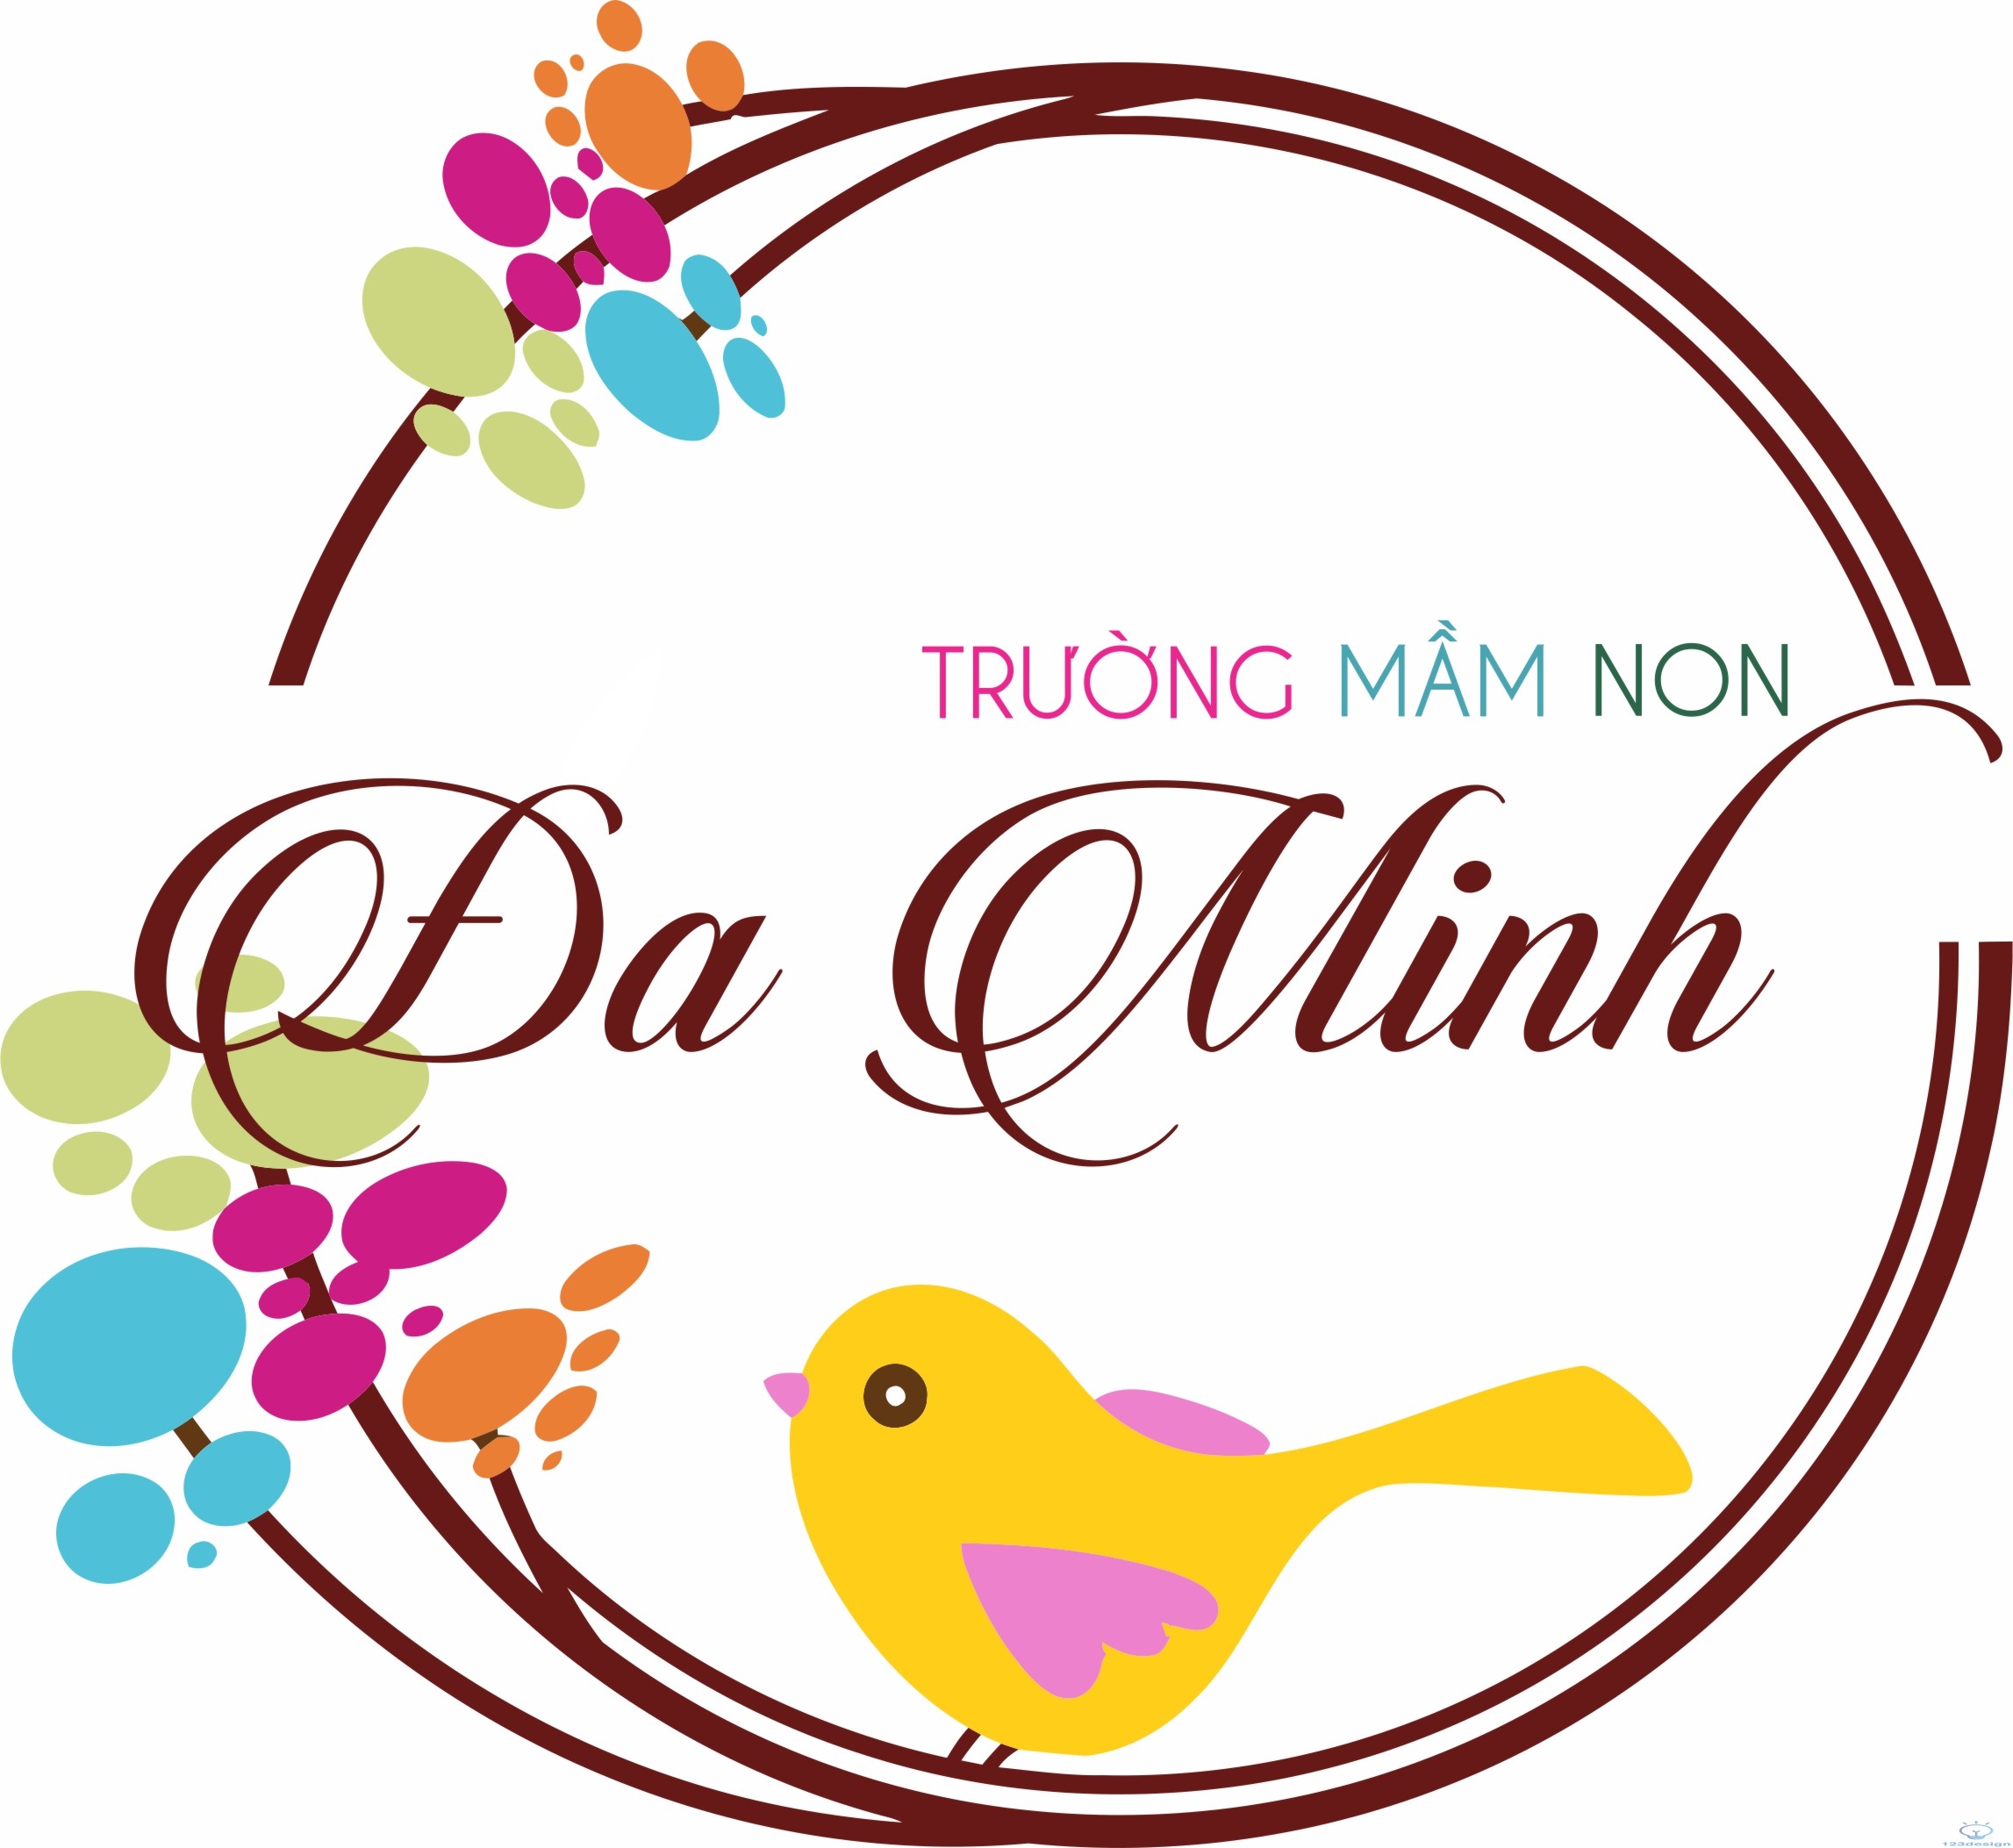 Temnhan0020-Logo trường mầm non Đa Minh chim nhỏ đậu trên cành ...